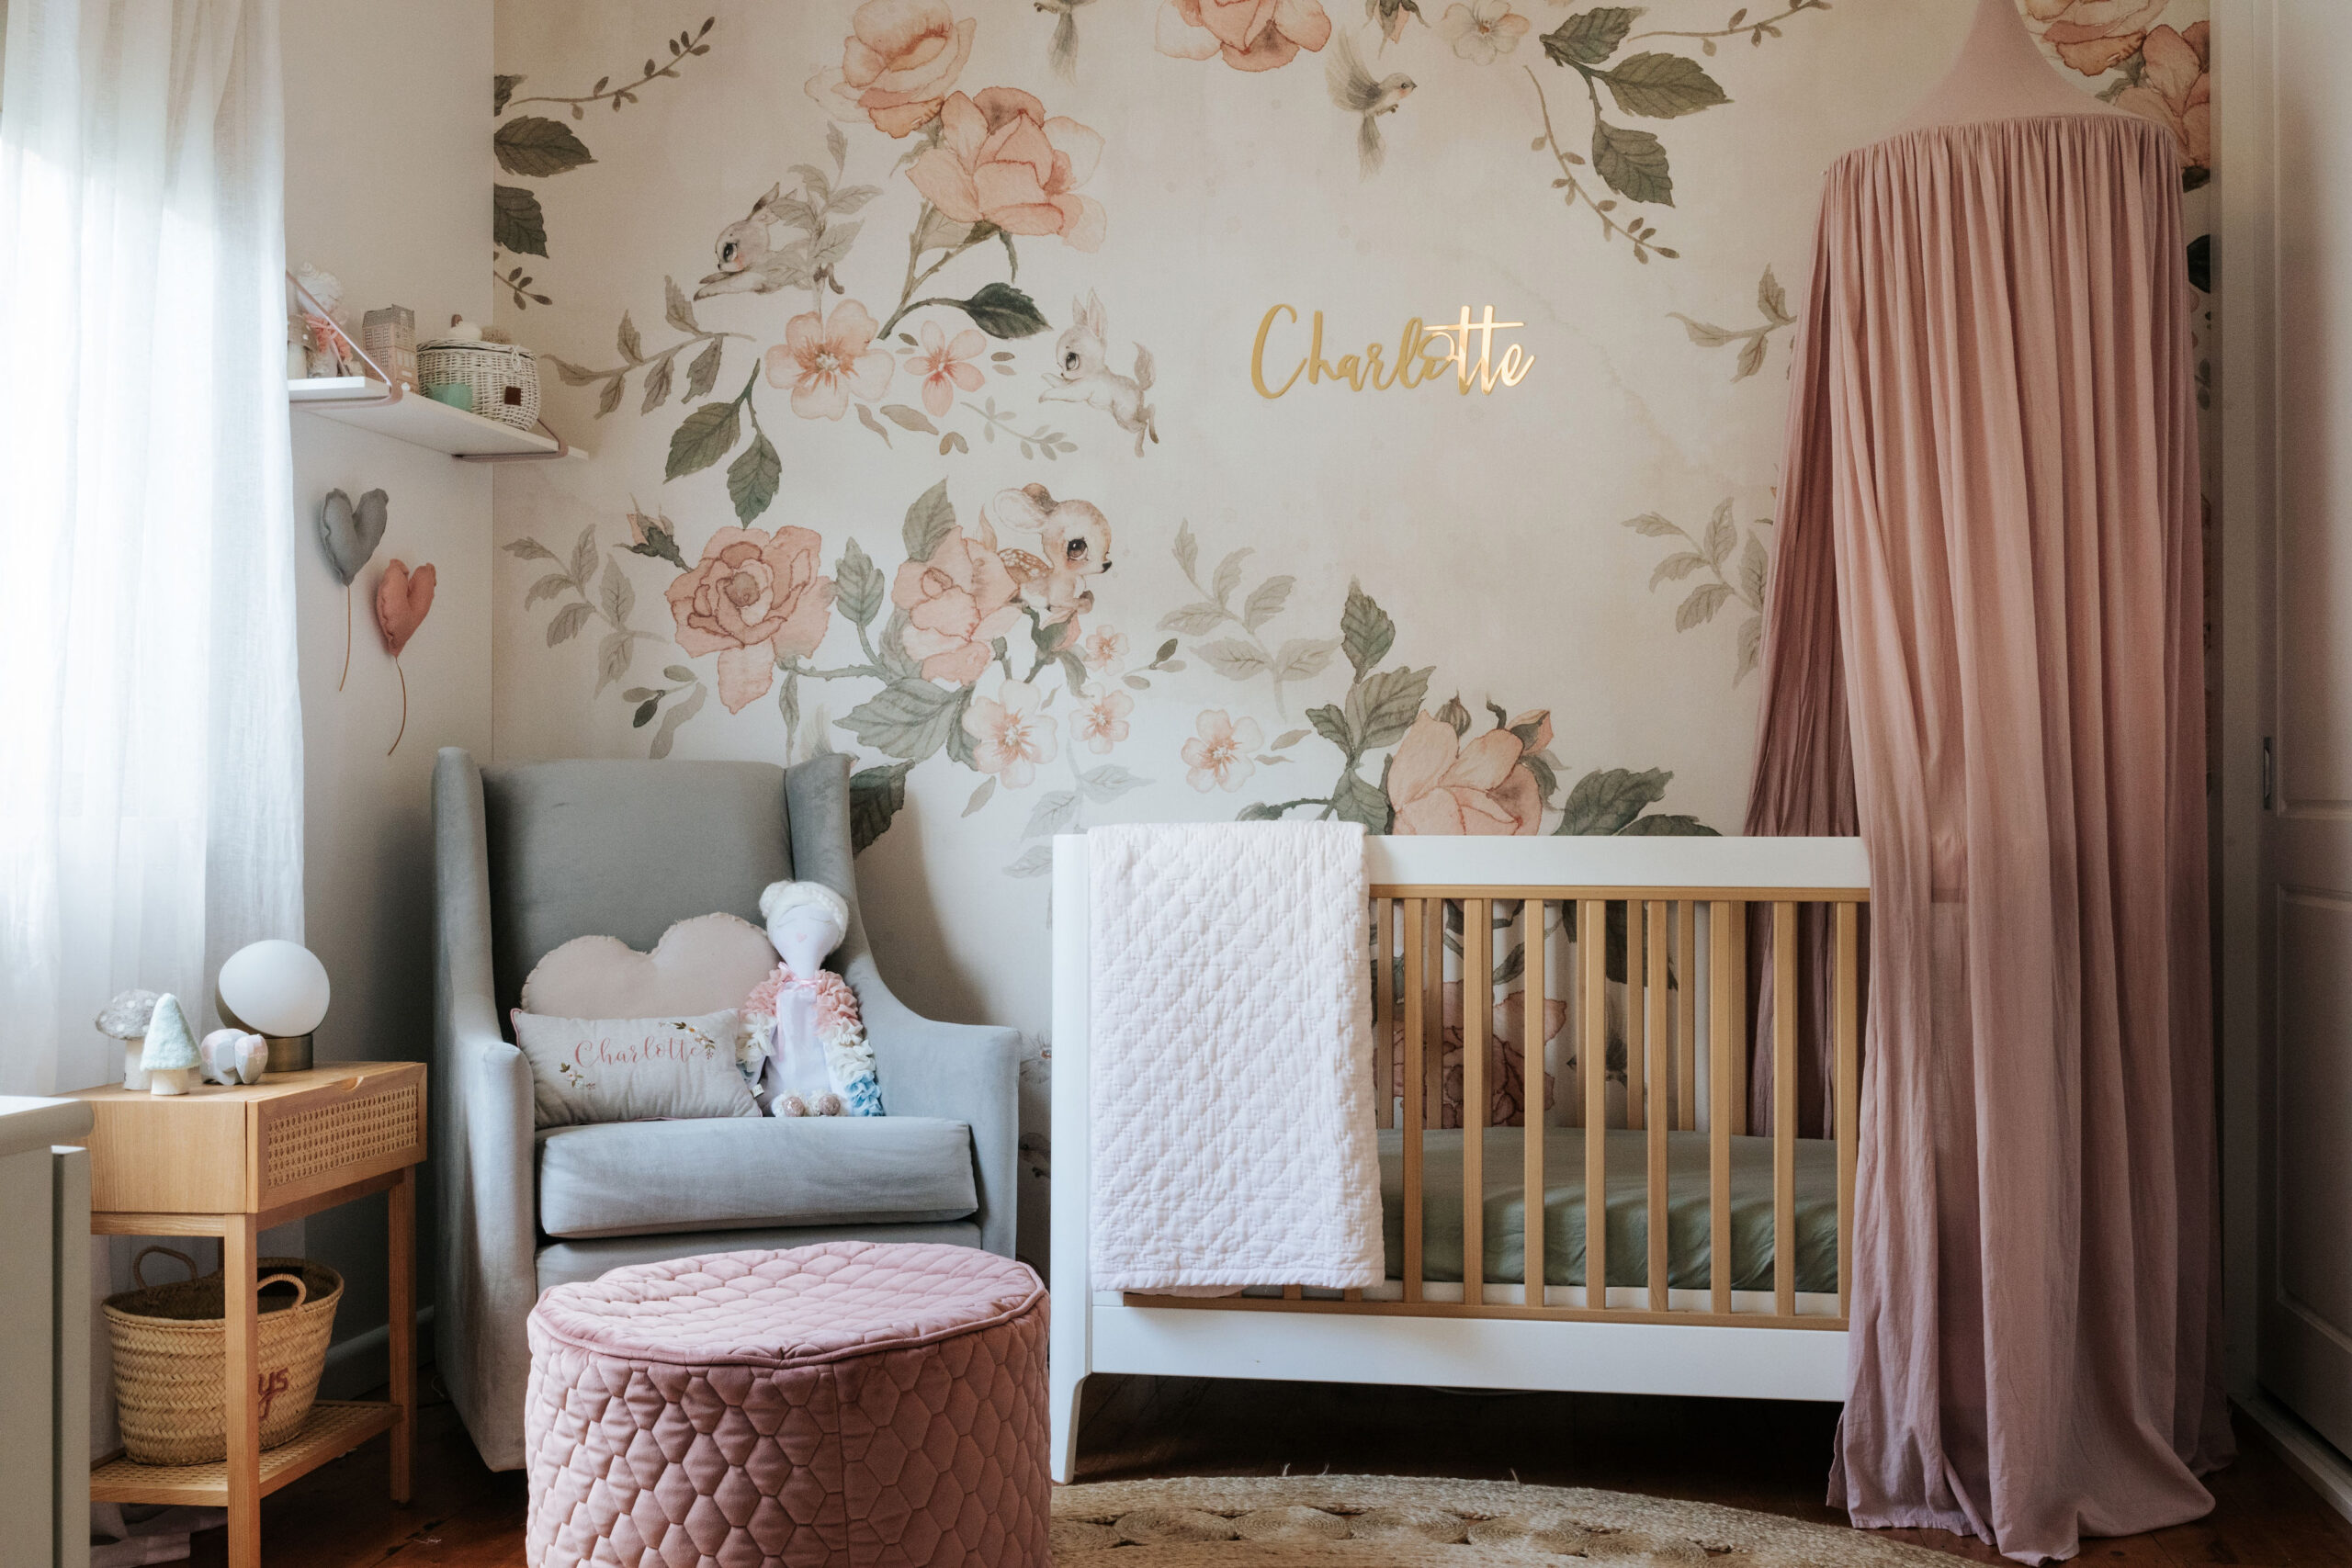 Charlotte’s Nursery